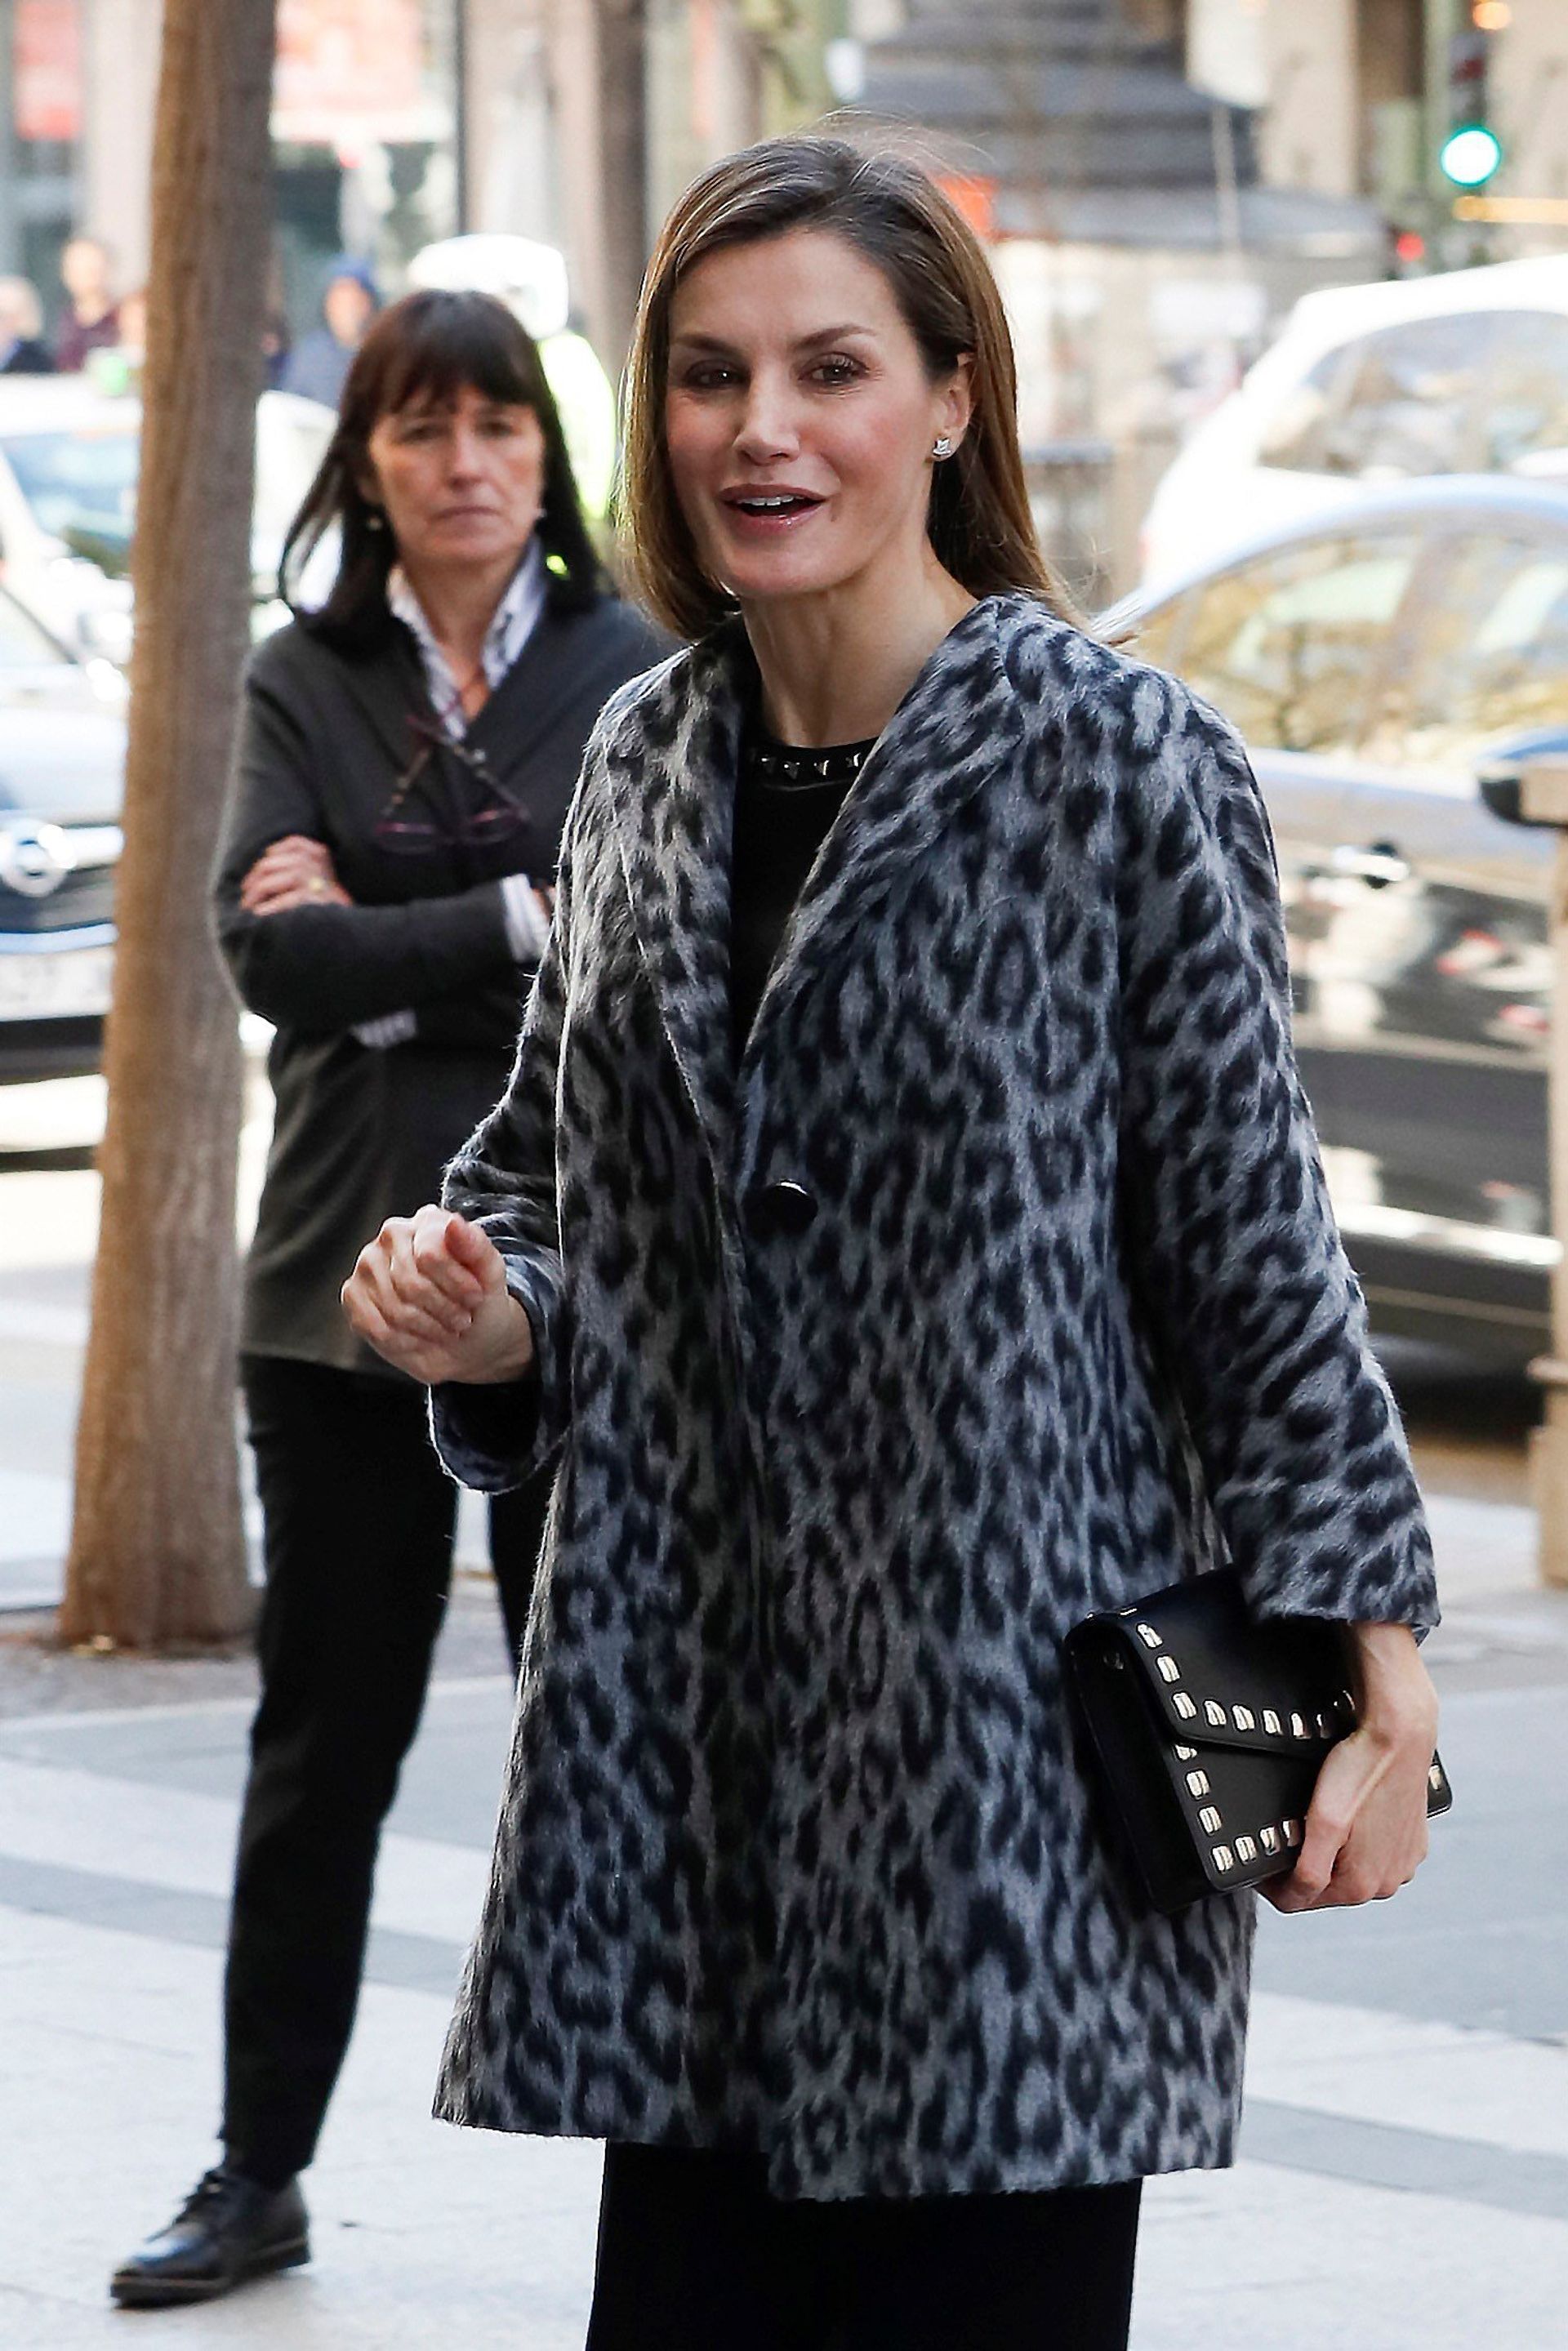 Koningin Letizia van Spanje trok een grijze jas met luipaardprint uit de kast voor een vergadering